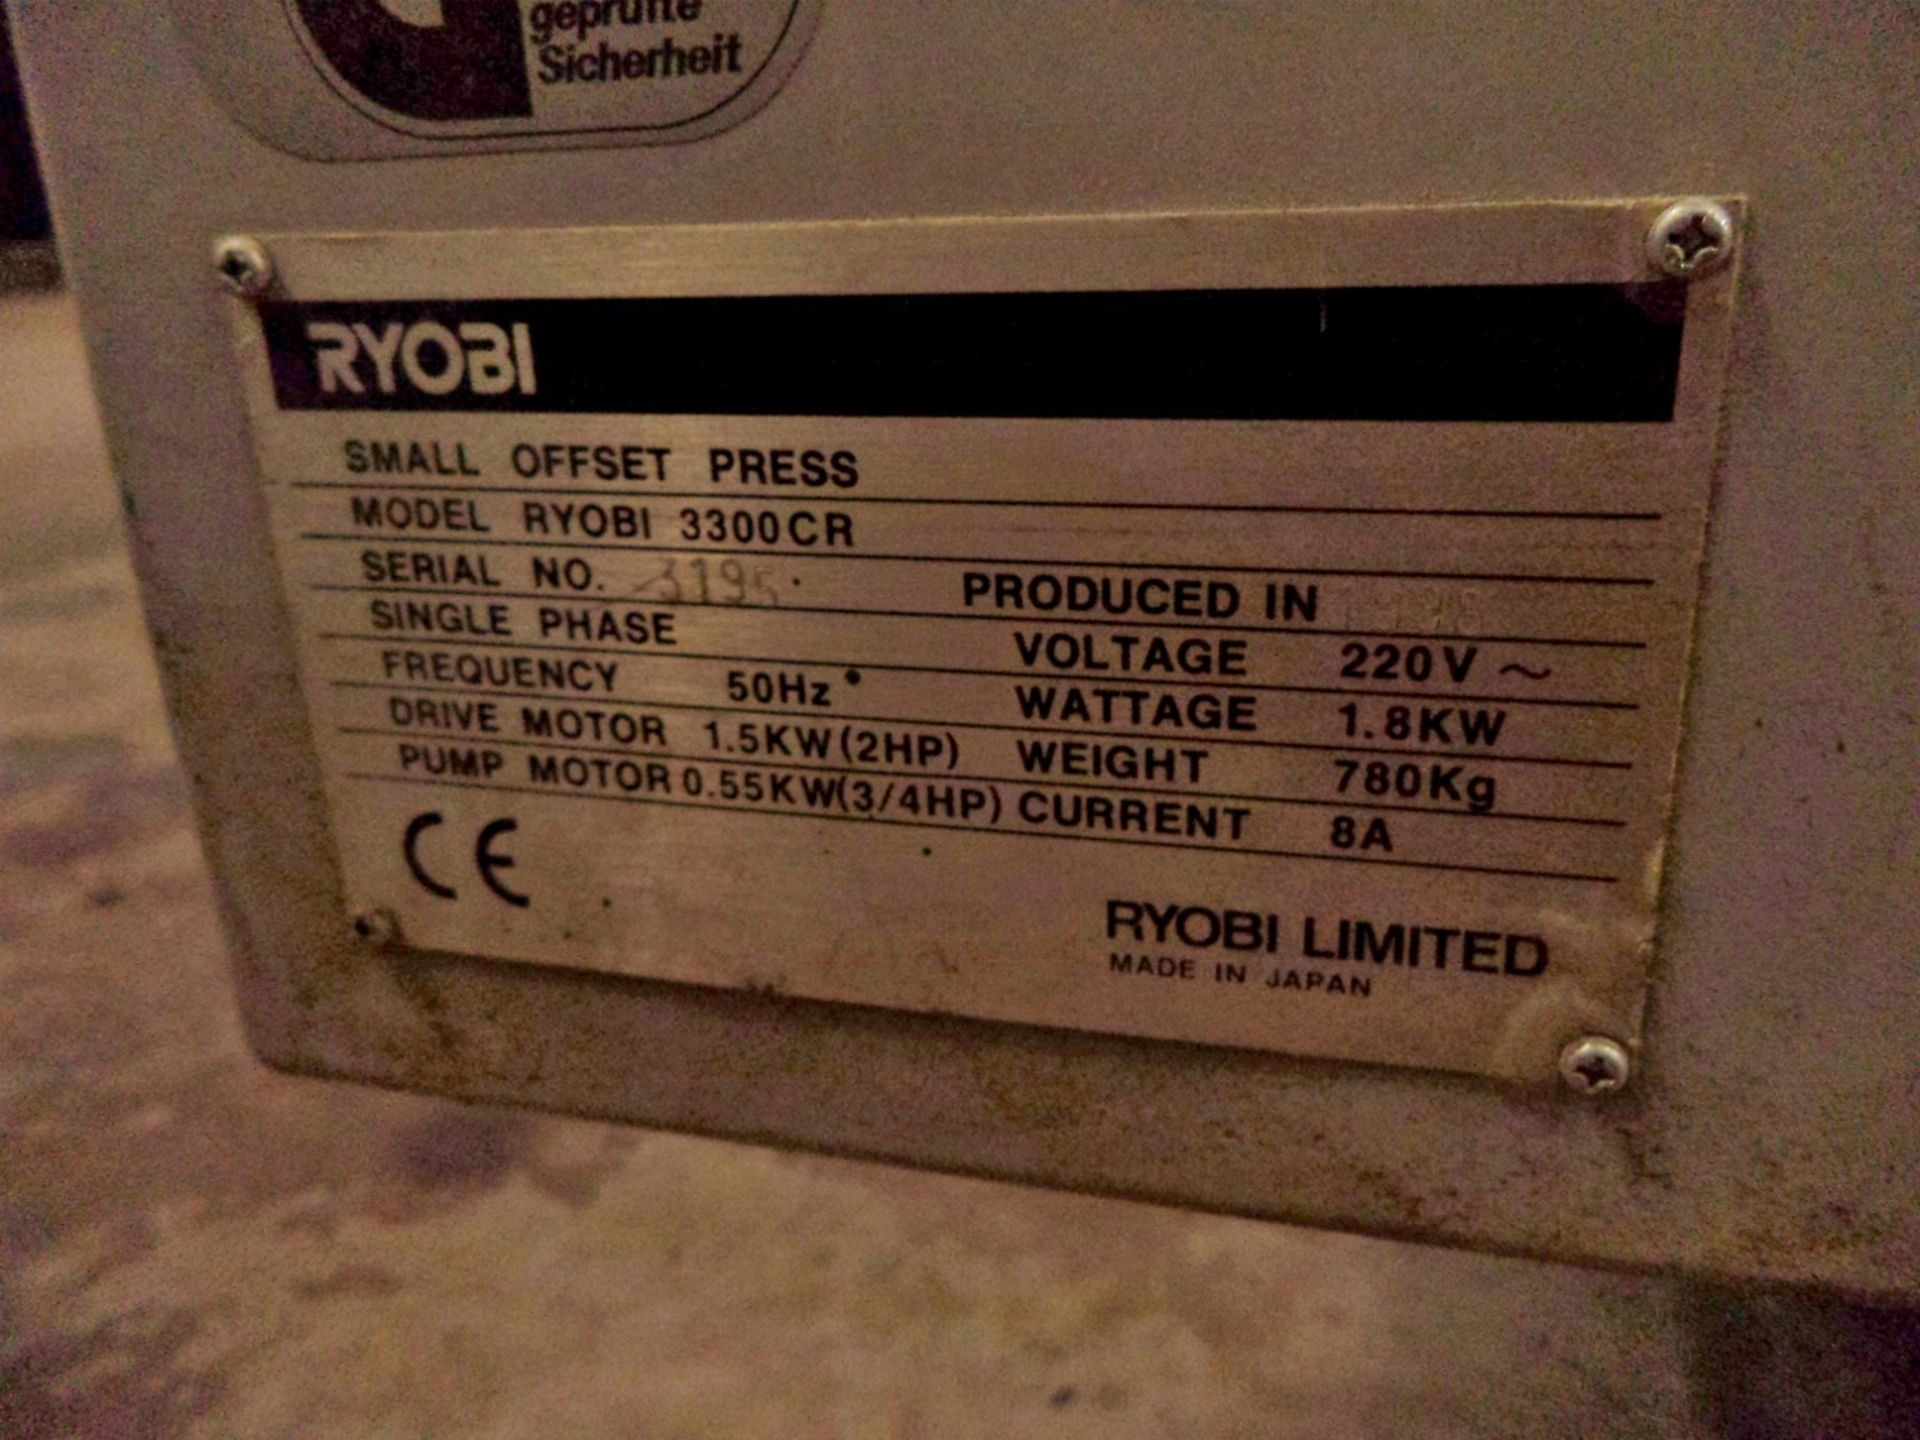 Ryobi 3300CR printing press - Image 4 of 7